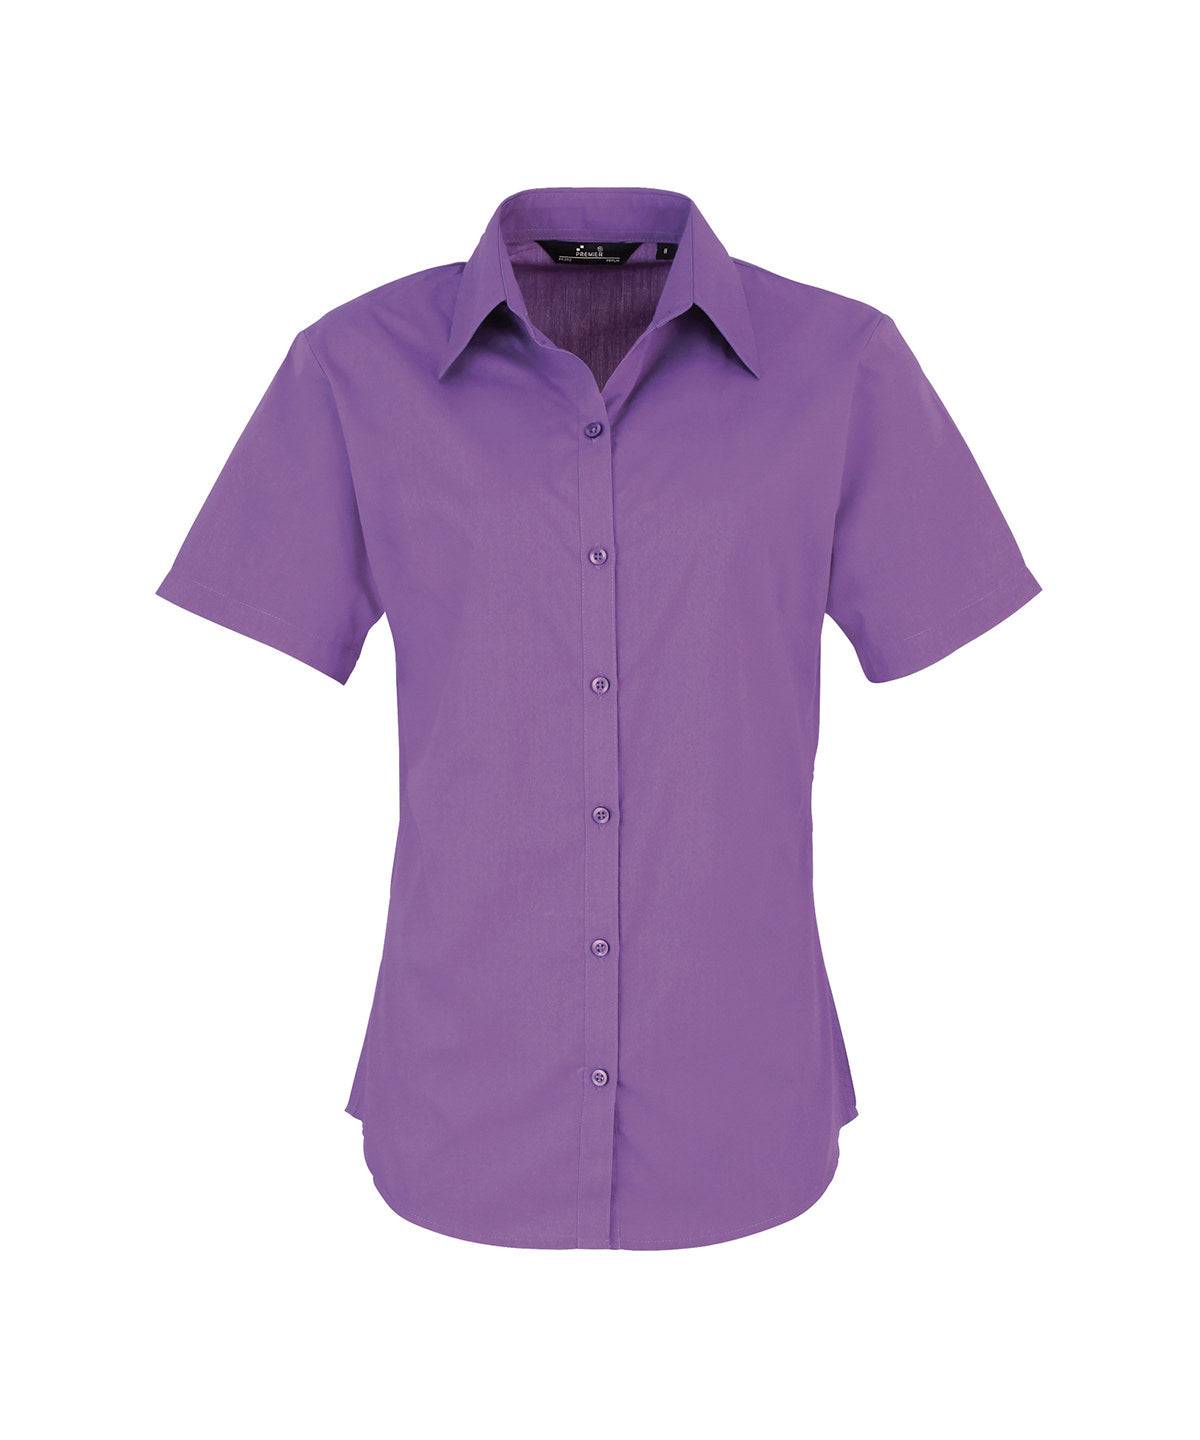 Rich Violet - Women's short sleeve poplin blouse